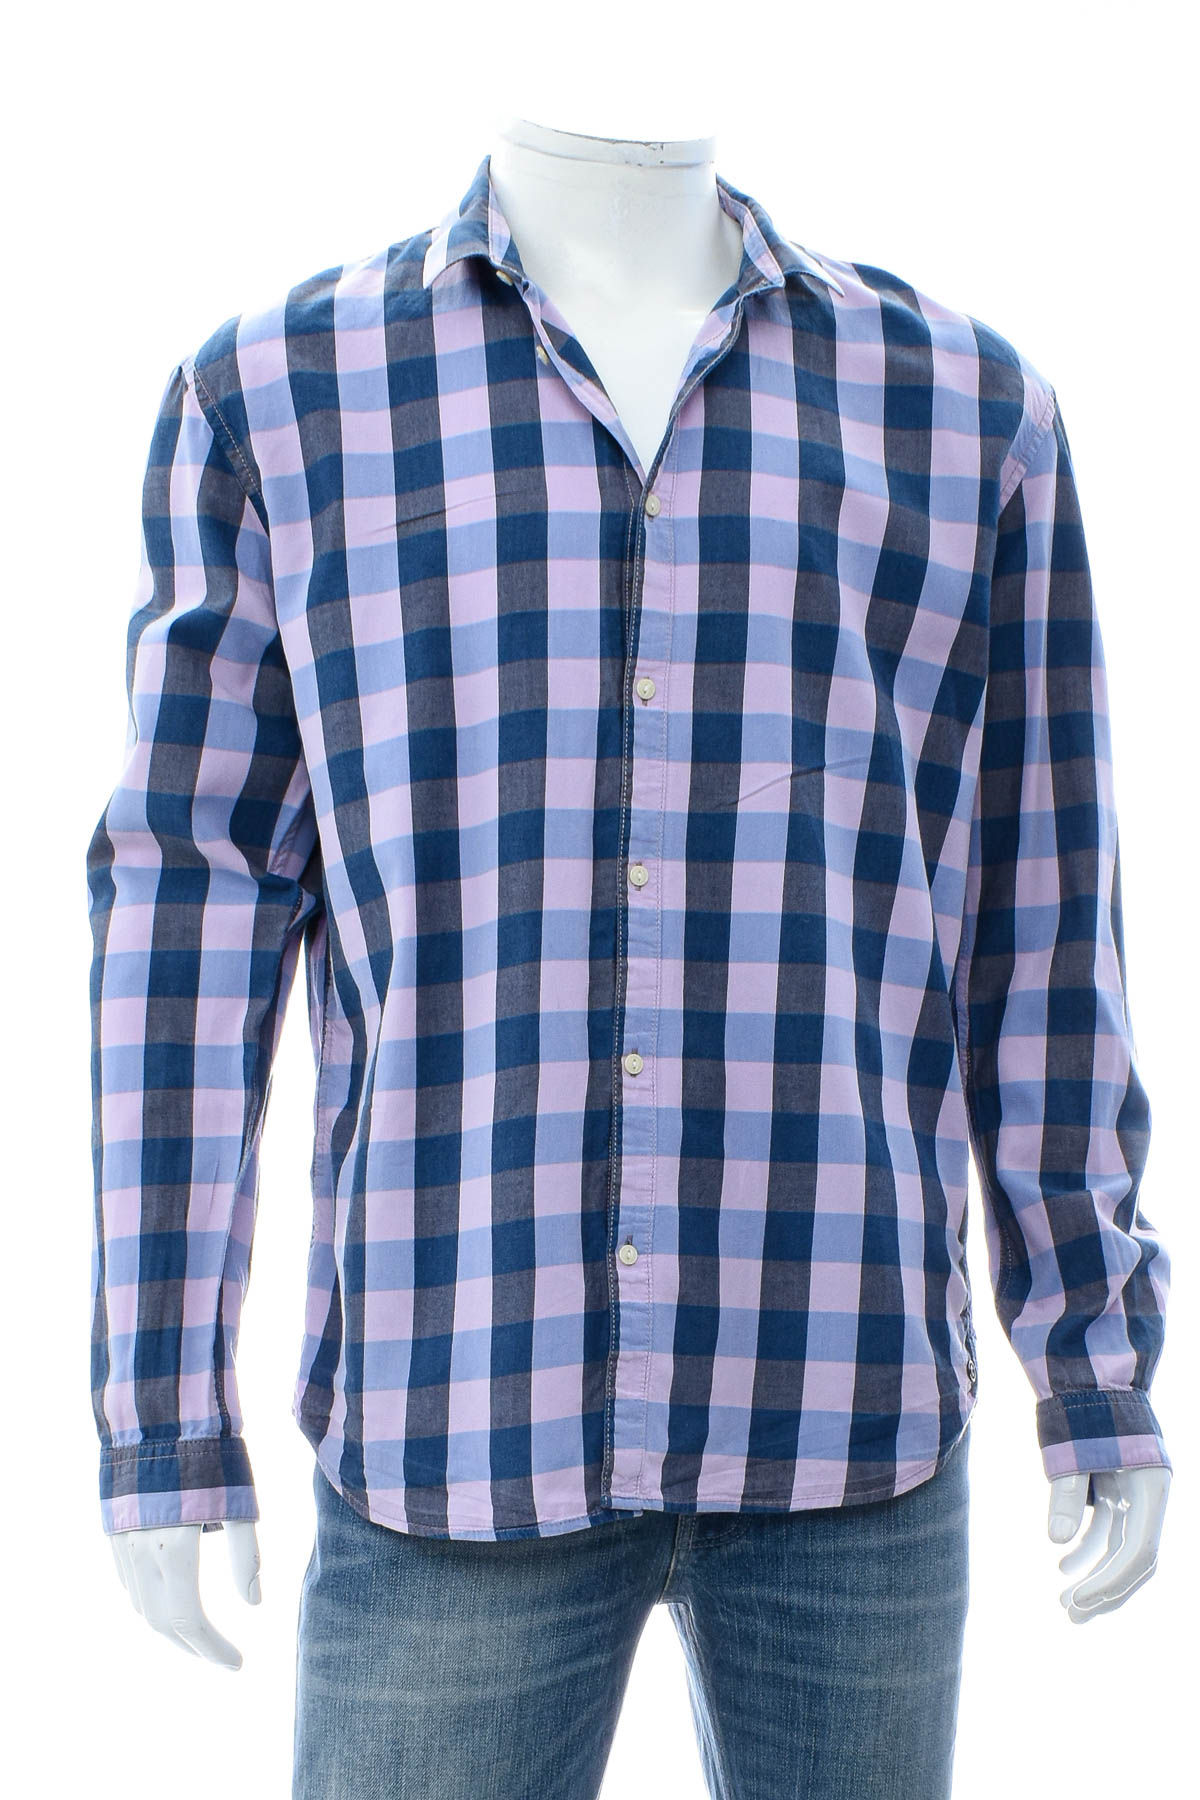 Ανδρικό πουκάμισο - TOM TAILOR Denim - 0